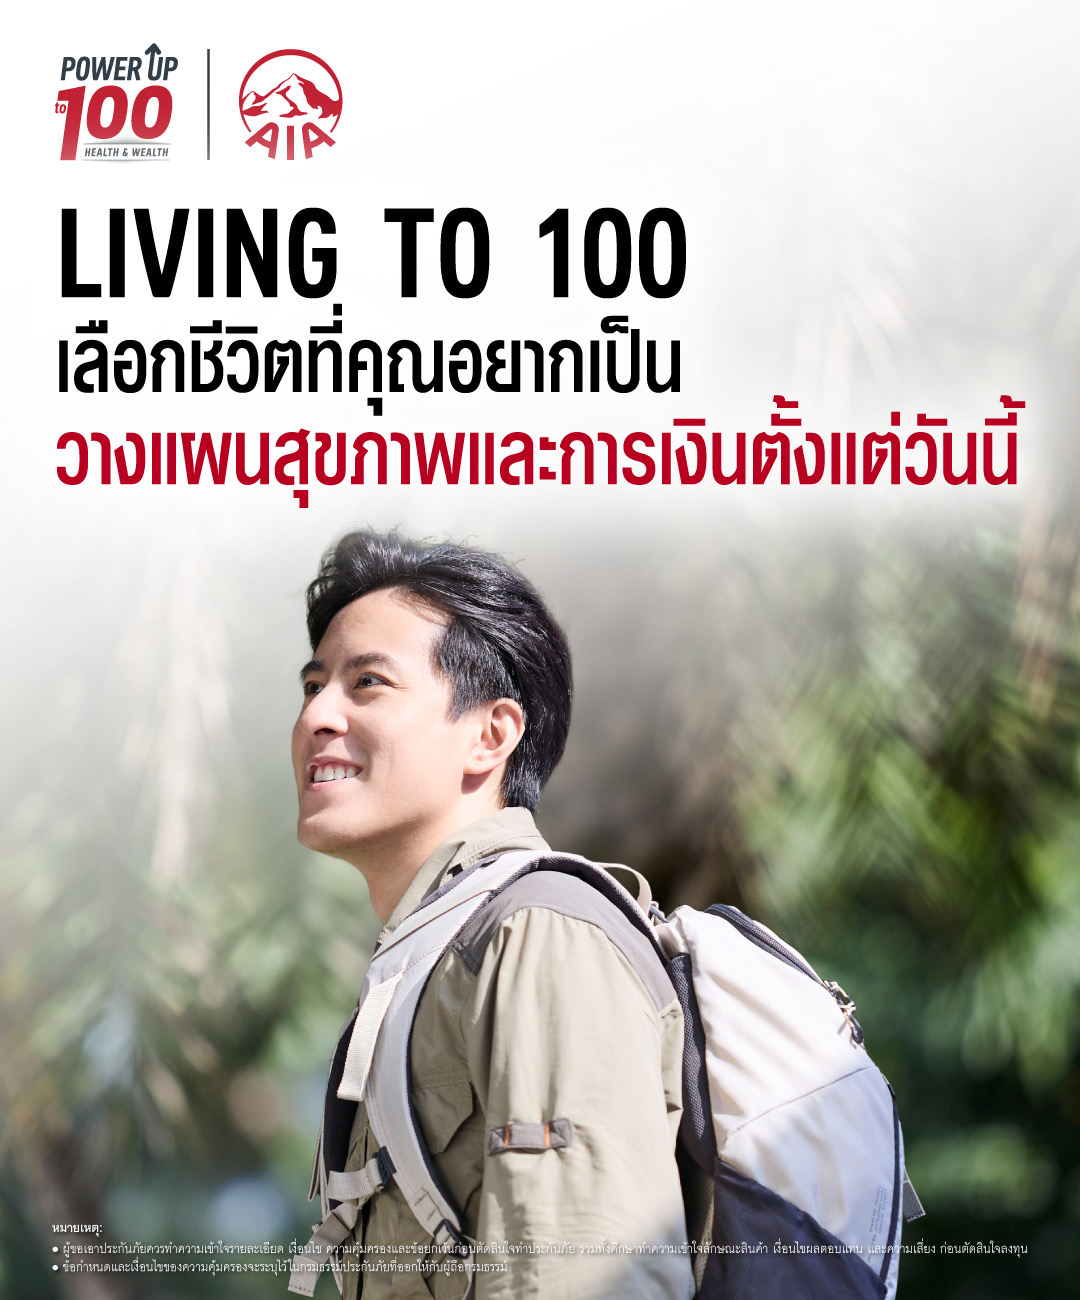 เอไอเอ ประเทศไทย เปิดตัวภาพยนตร์โฆษณาชุดใหม่ “Living to 100” ชวนคนไทยวางแผนสุขภาพและการเงิน เพื่อชีวิตที่ทุกคนเลือกเองได้